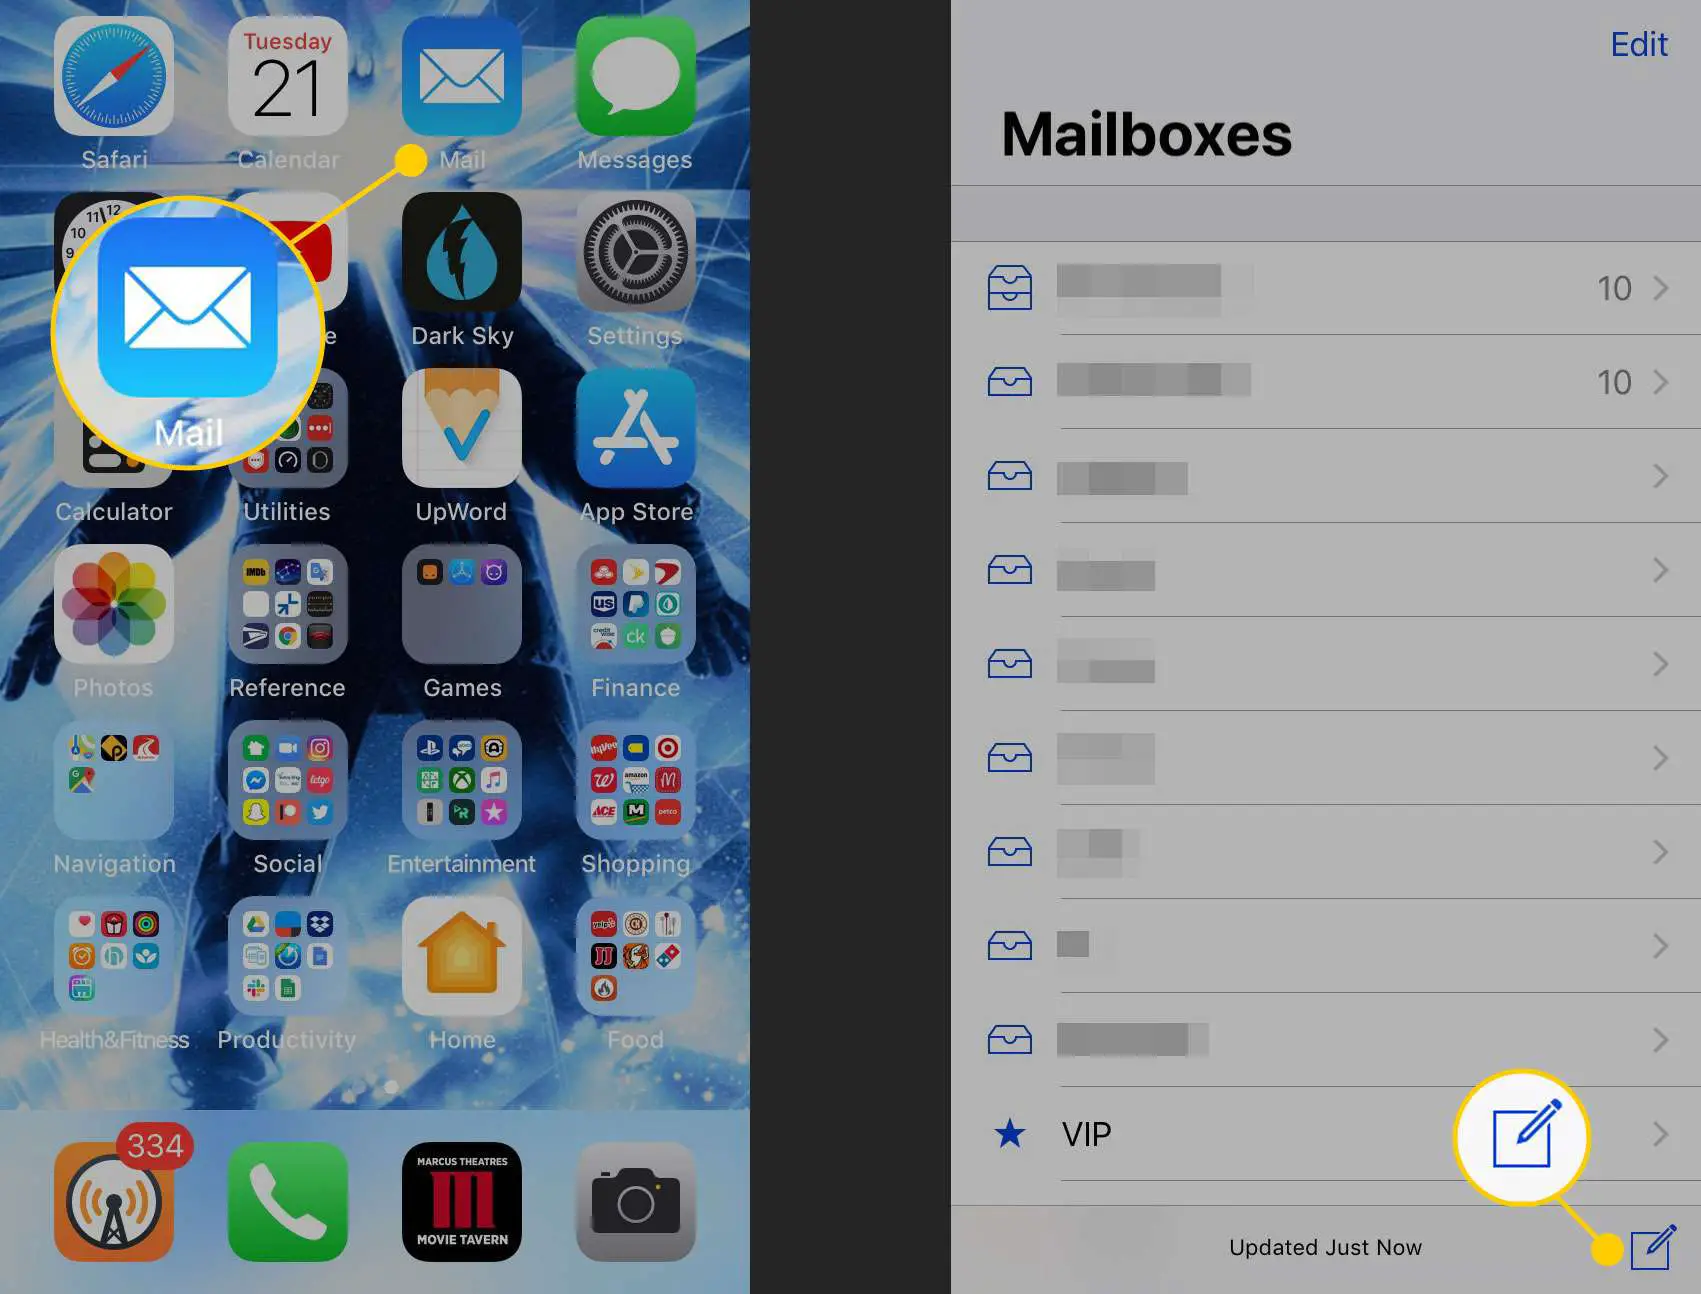 Criar uma nova mensagem no aplicativo Mail do iPhone